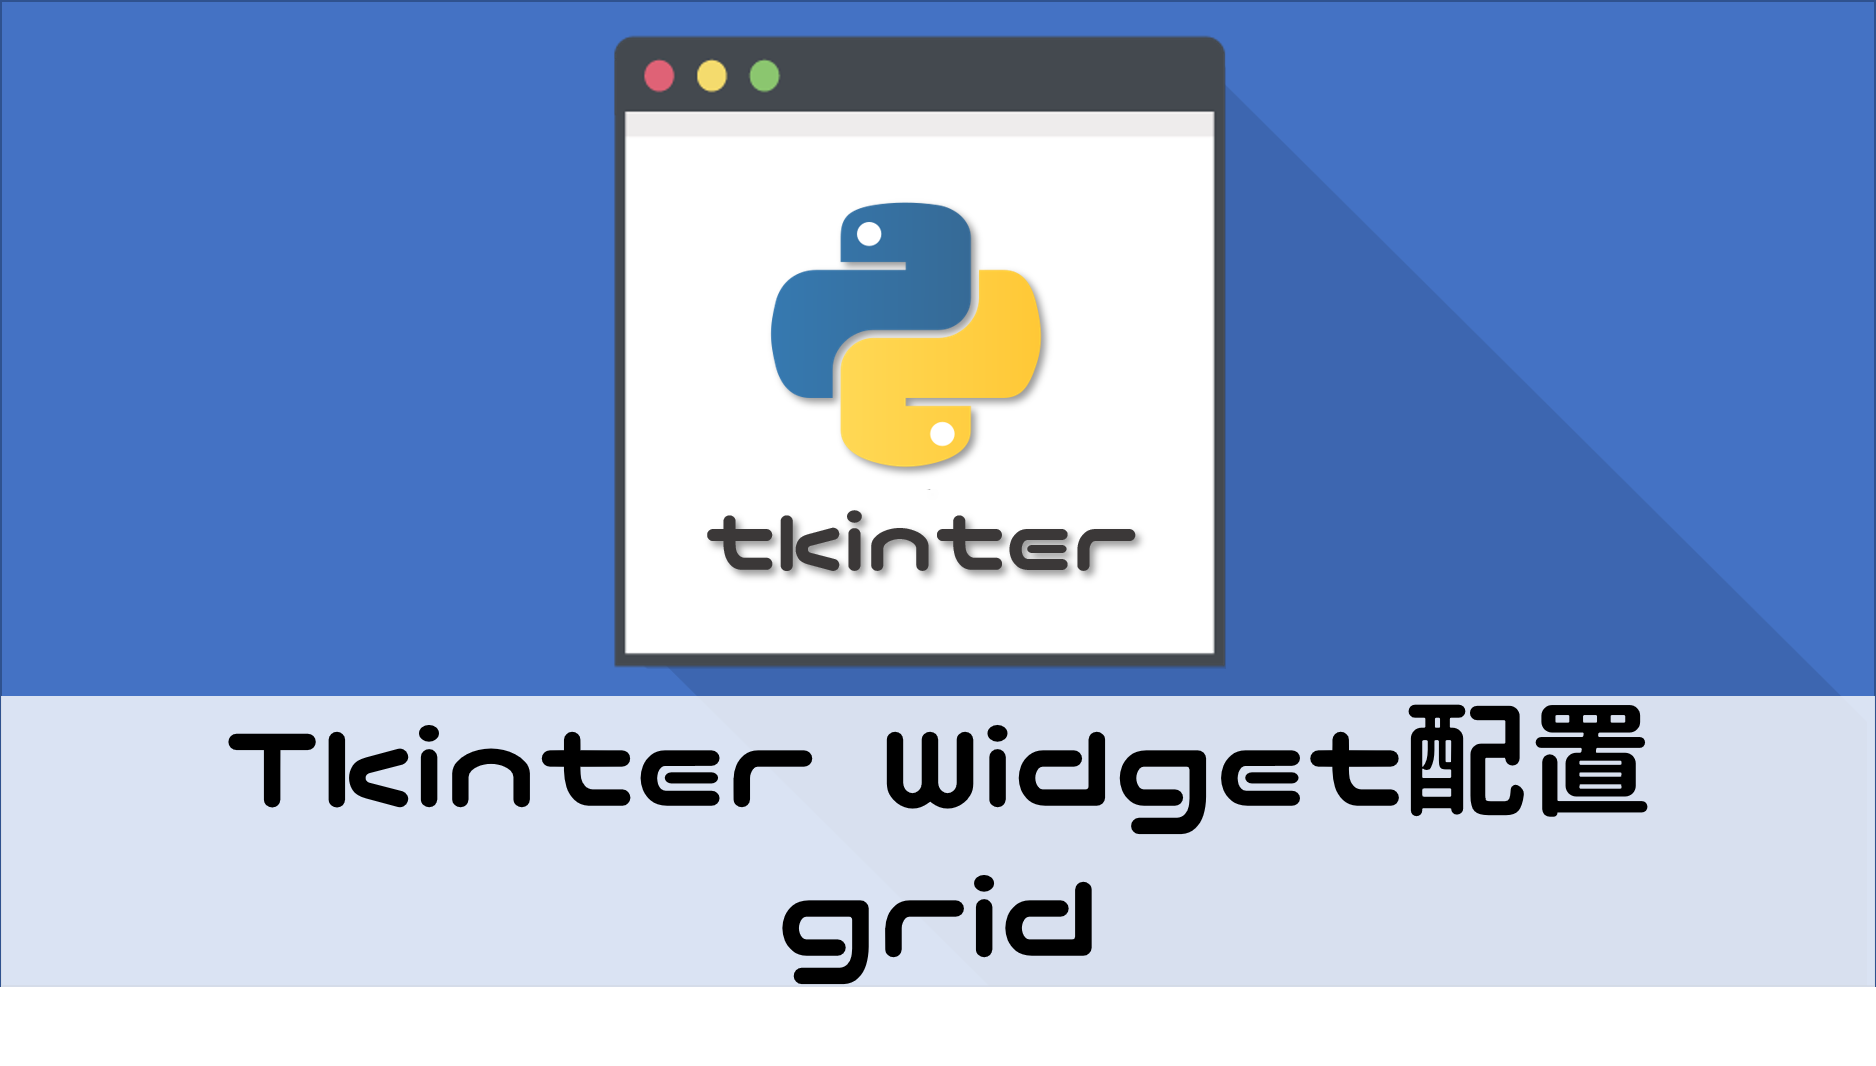 tkinter Widget配置 grid